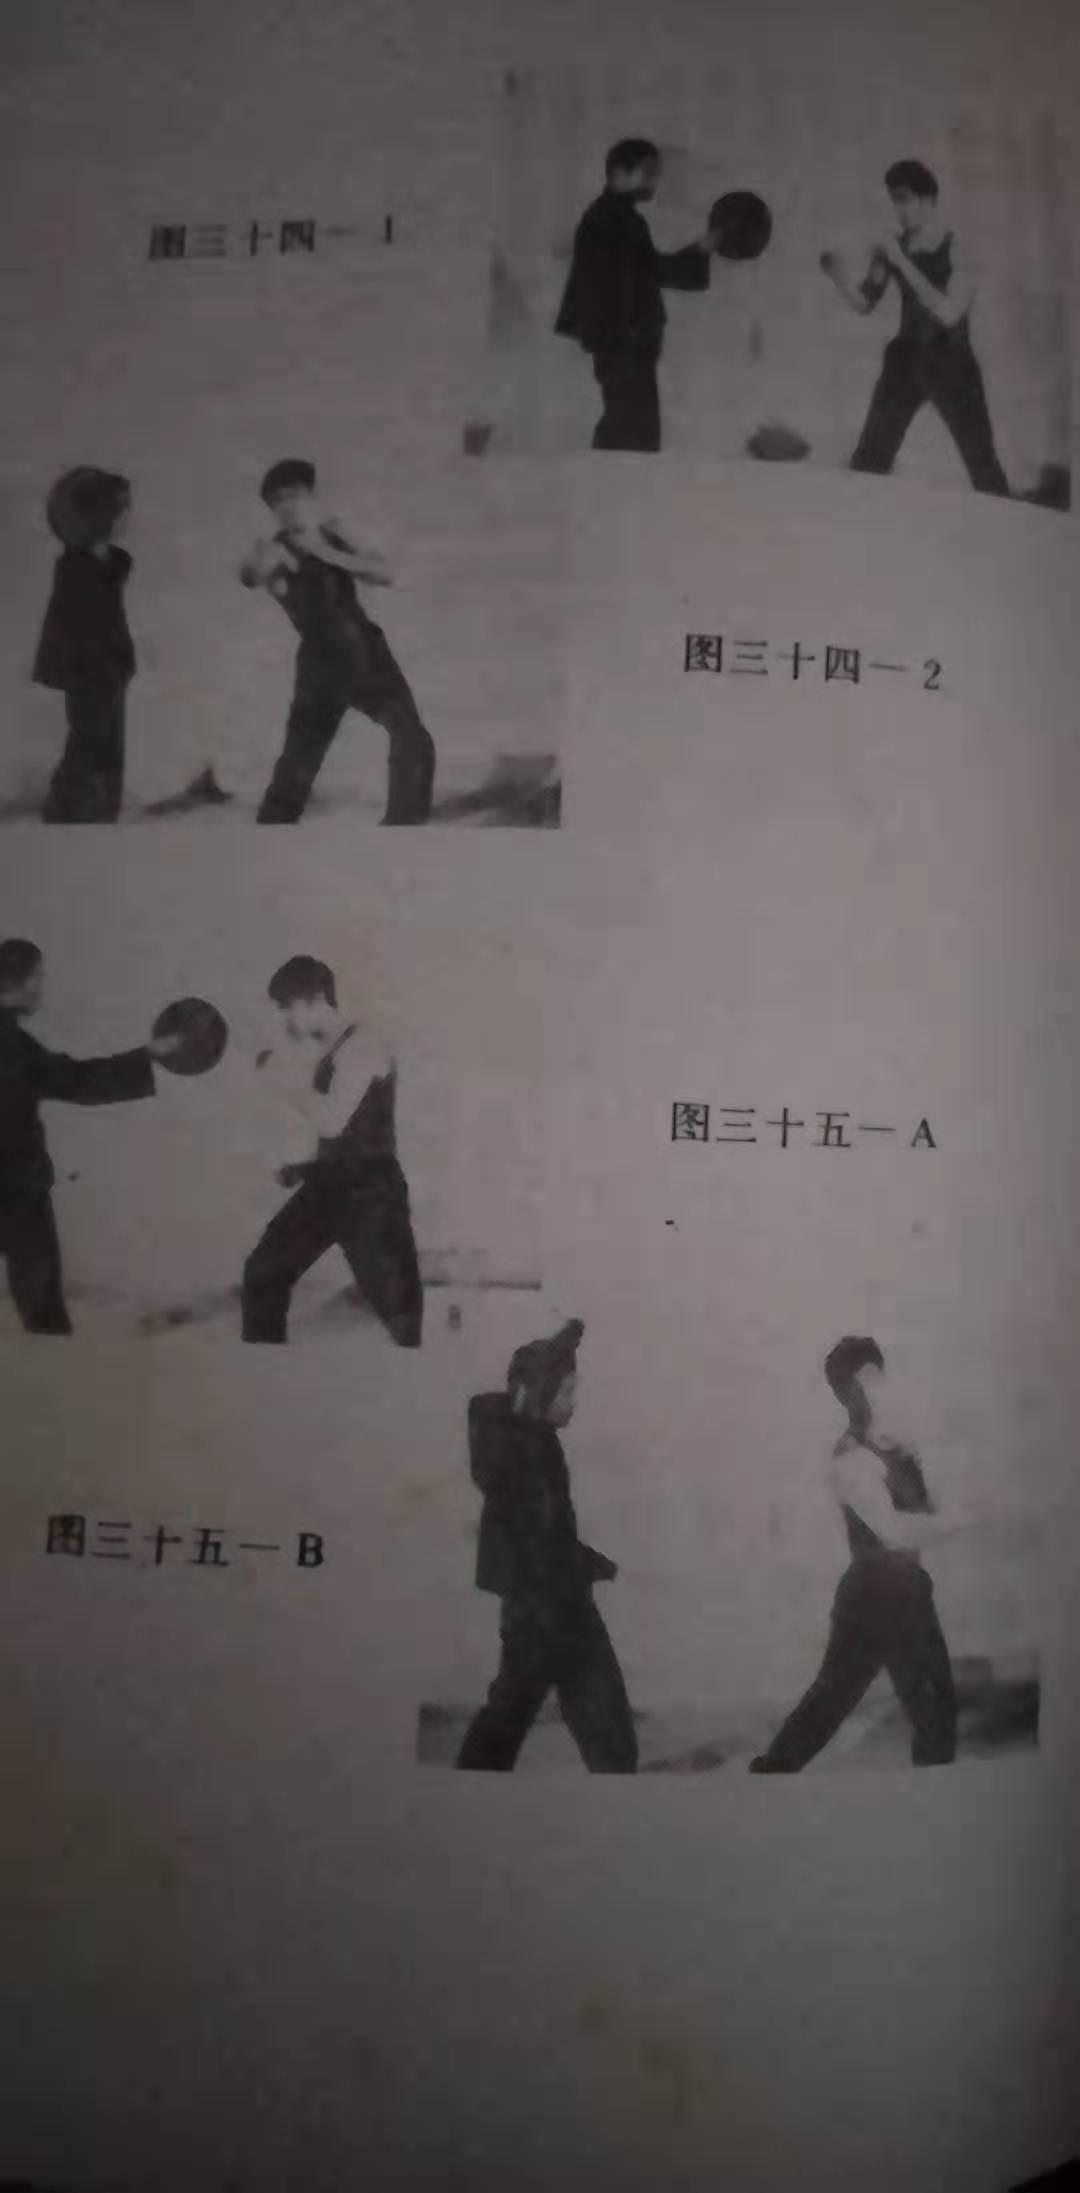 一、李小龙背部训练的十一大方法|李小龙肢体表达艺术1|武术世家